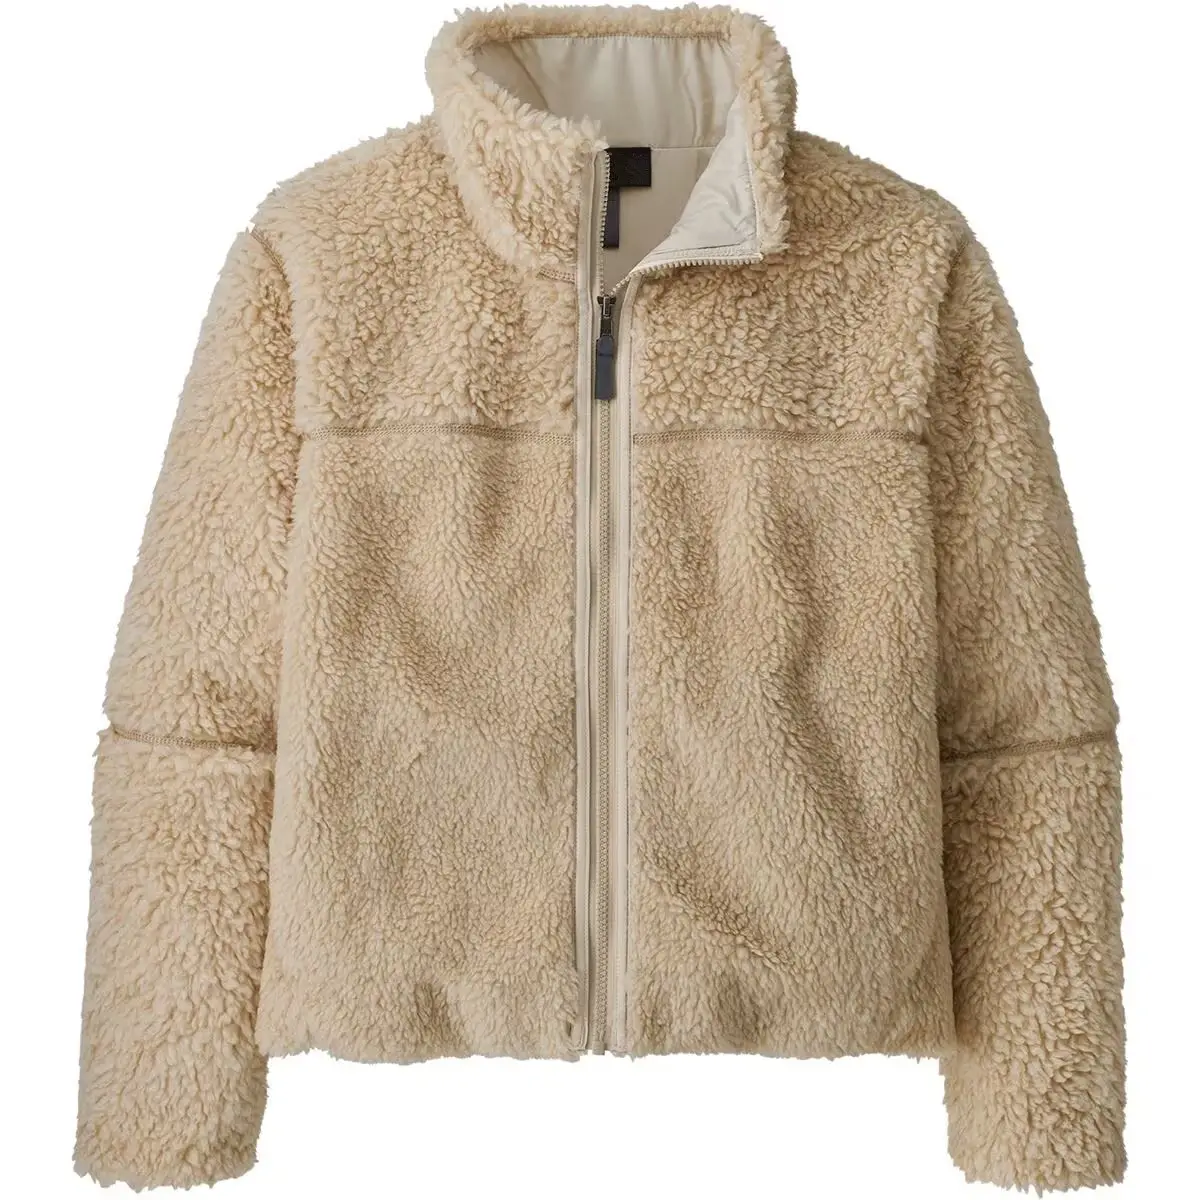 Kadınlar için klasik tarzı polar fermuarlı ceket yüksek kalite özel polar ceket